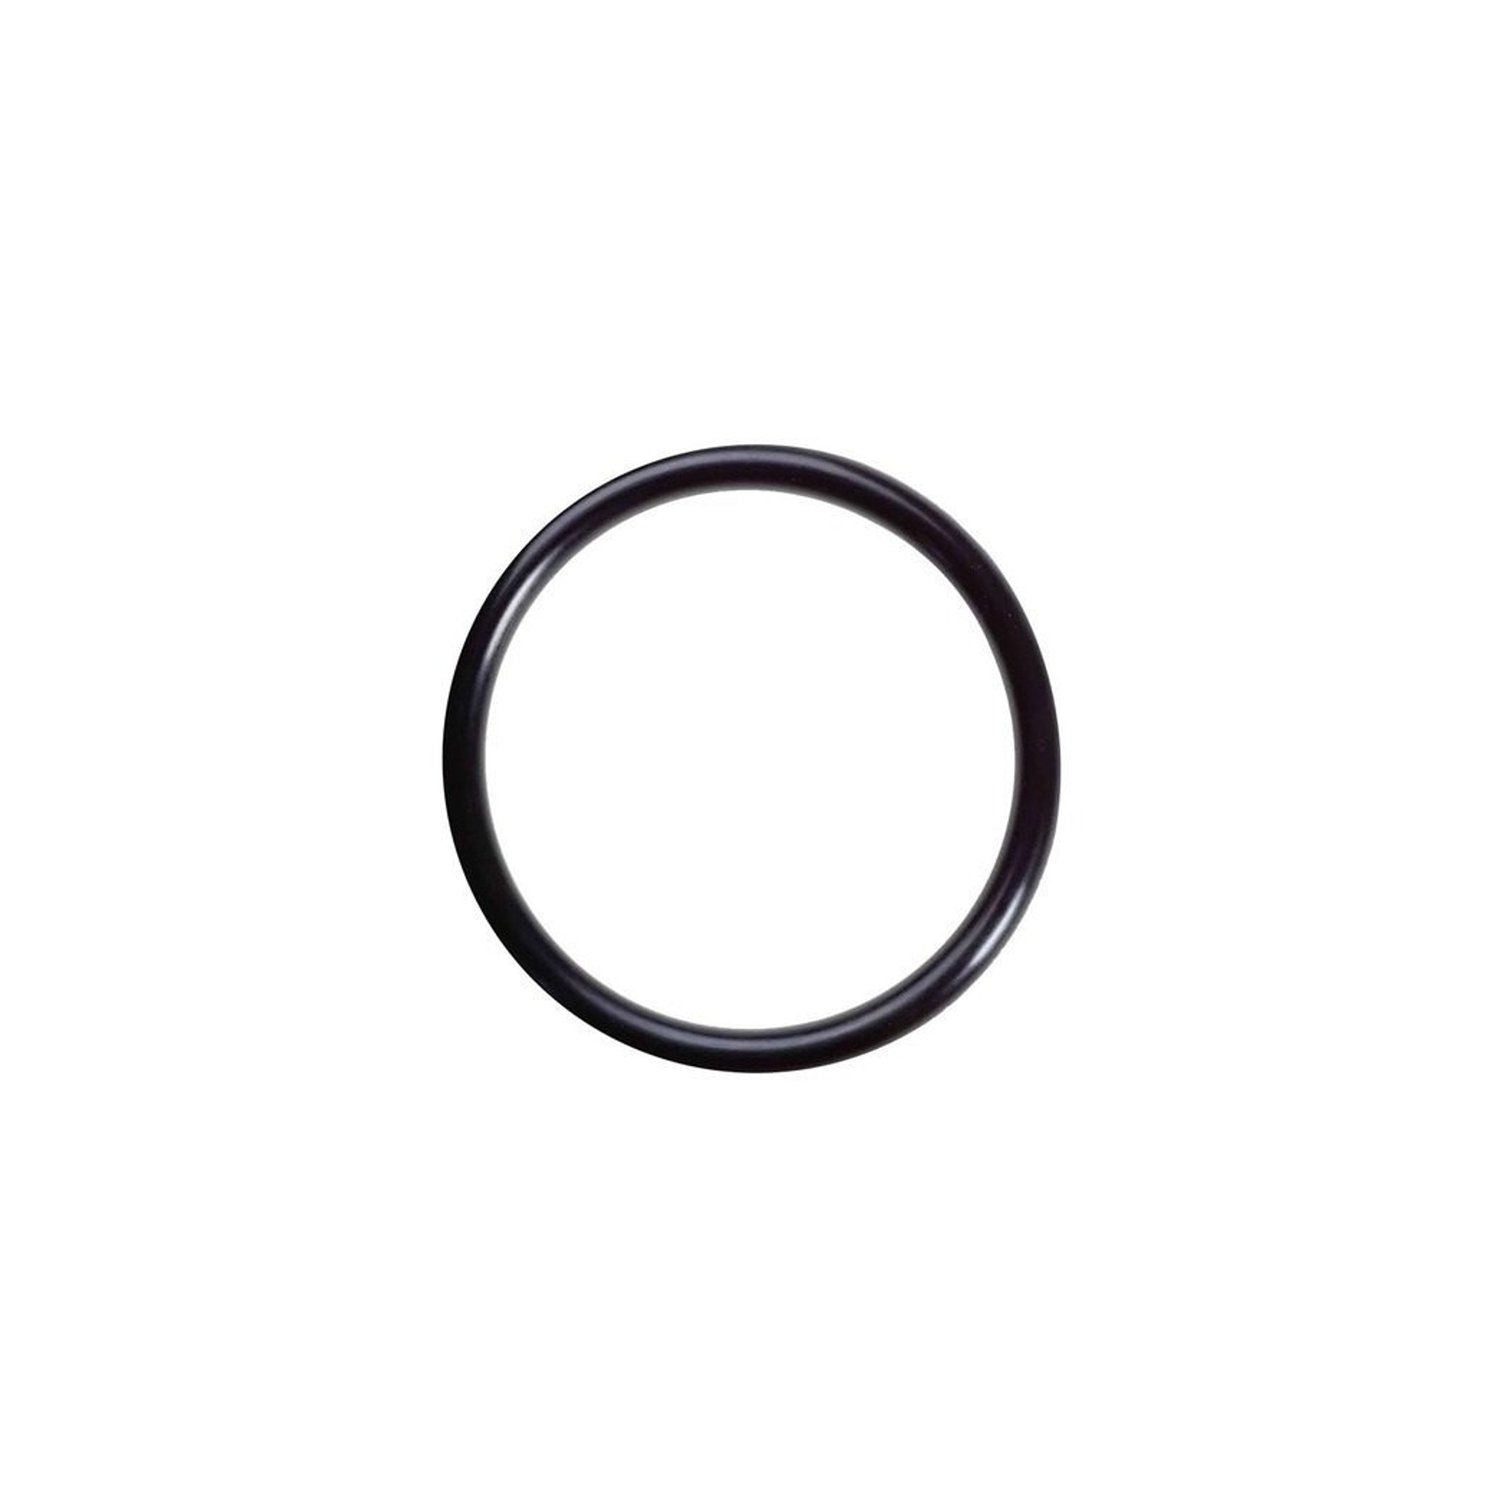 O-ring 8,8 x 1,9 mm 1 pz. gomma HNBR, per condizionatori d'aria R12 e R134a